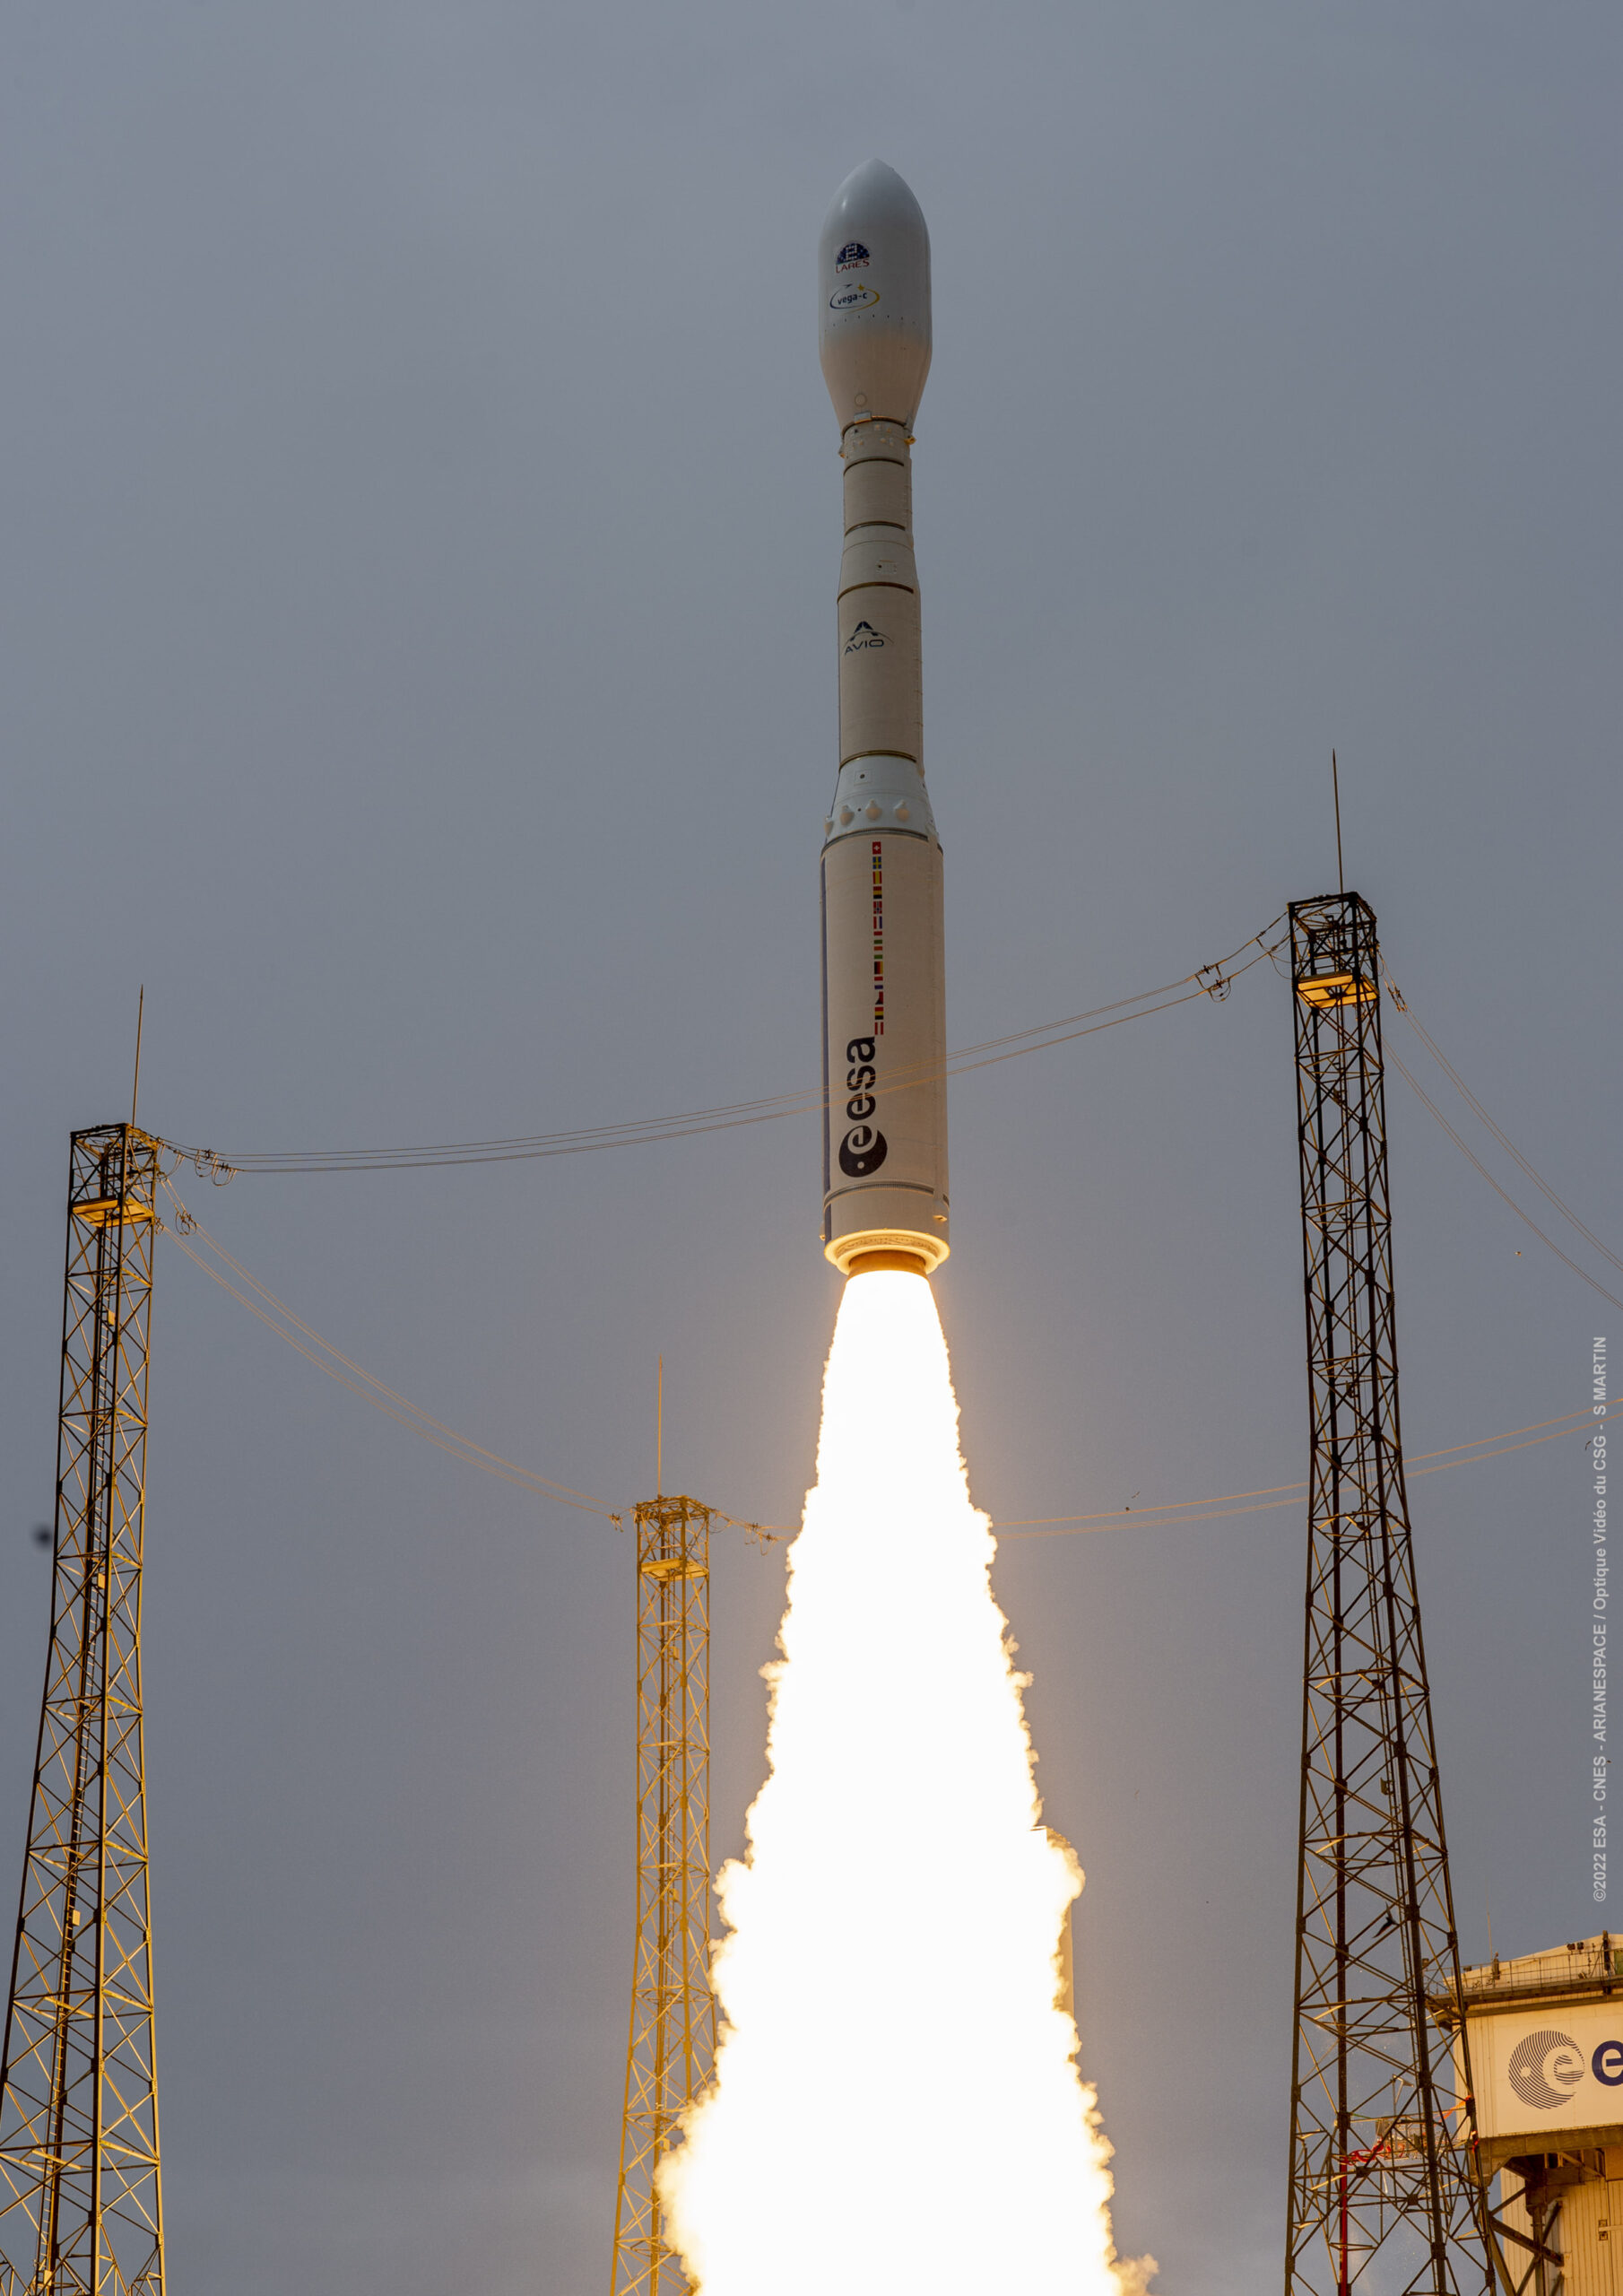 当地时间 15:13 ，欧洲航天局新的 Vega-C 火箭从圭亚那航天中心发射升空，开始它的首飞。凭借着全新的第一级和第二级以及升级后的第四级， Vega-C 在离地 700 公里的圆形极轨道的酬载能力已经从其前身 Vega 的 1.5 吨提高到约 2.3 吨。 VV21 航班中， Vega-C 的有效载荷是意大利航天局的一项科学任务 LARES-2 以及来自法国、意大利和斯洛文尼亚的六颗科研立方卫星。